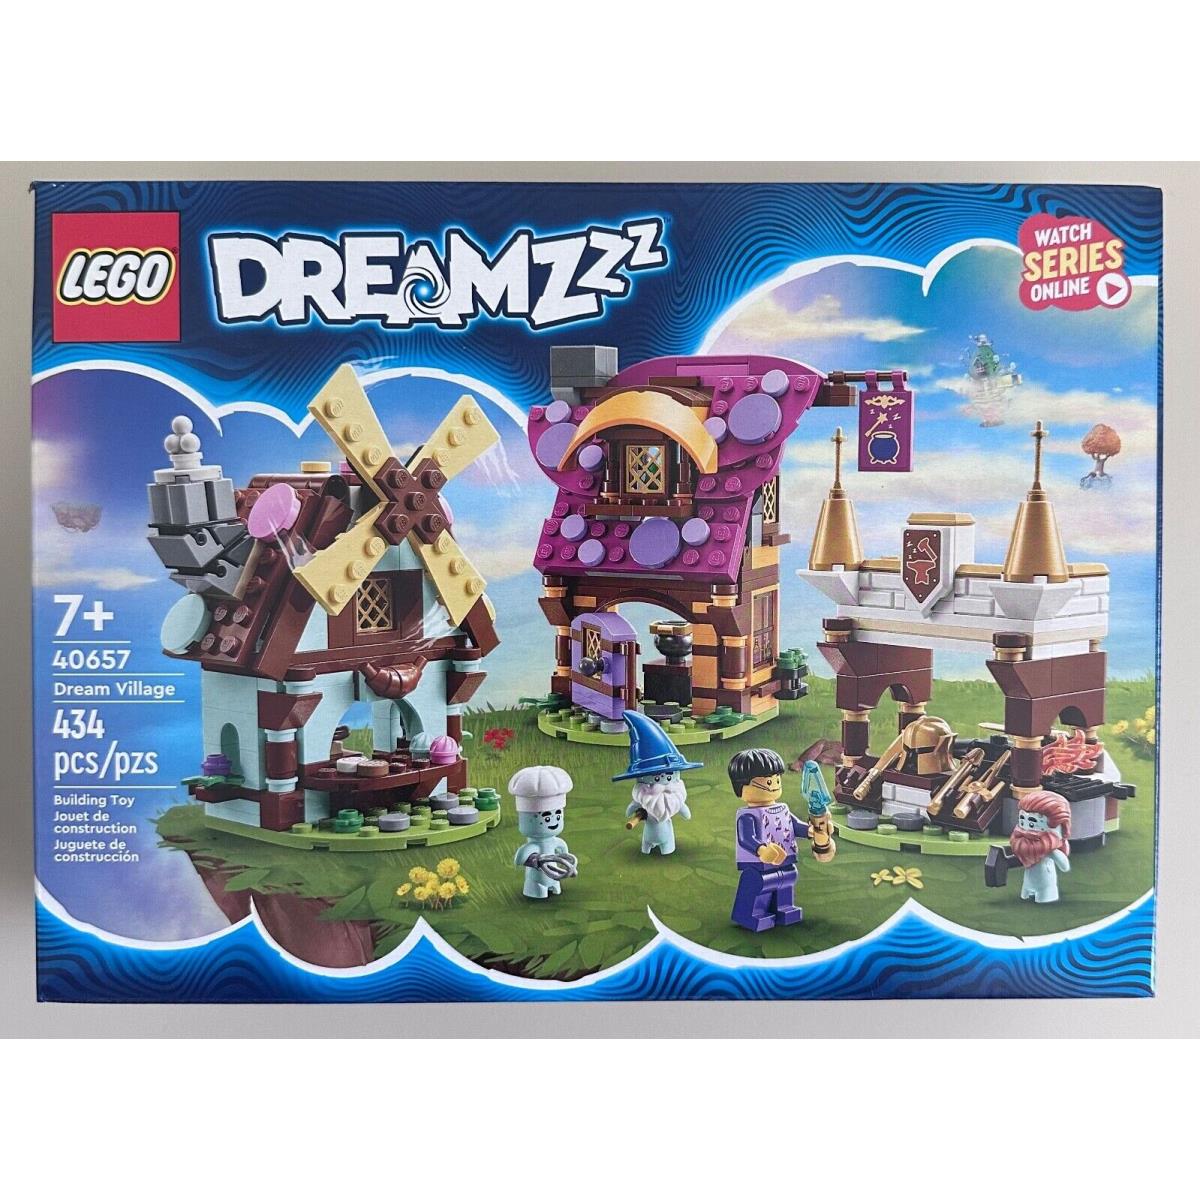 Lego Dreamzzz 40657 - Dream Village 434 Pieces Building Kit Toy Set 7+